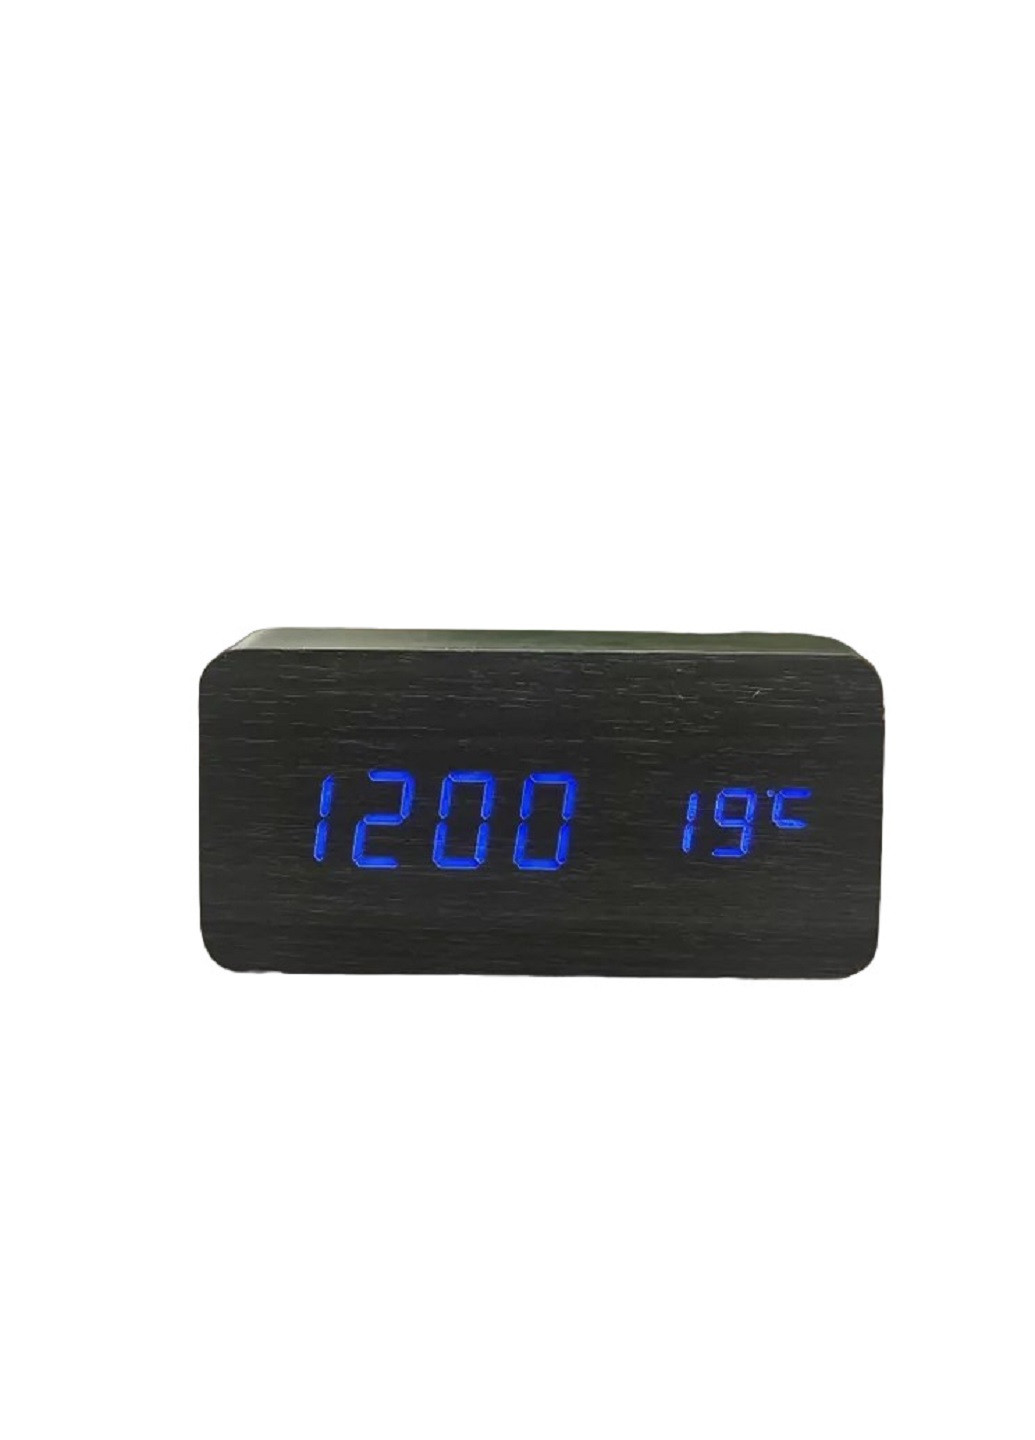 Годинник настільний з термометром VST-862 Чорний корпус Синє підсвічування VTech (276534229)